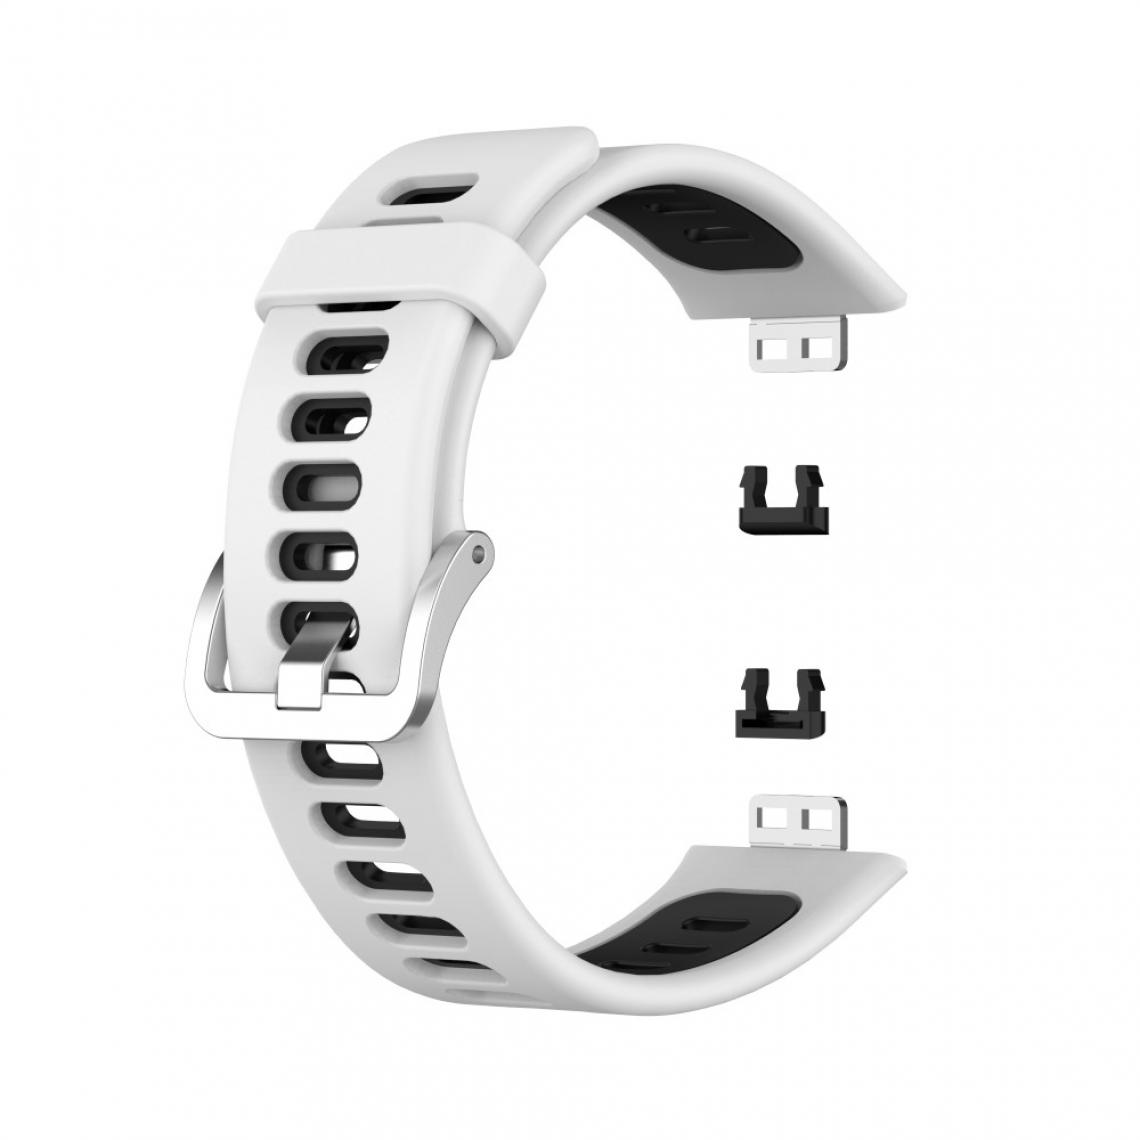 Other - Bracelet en silicone Bicolore souple blanc/noir pour votre Huawei Watch Fit - Accessoires bracelet connecté